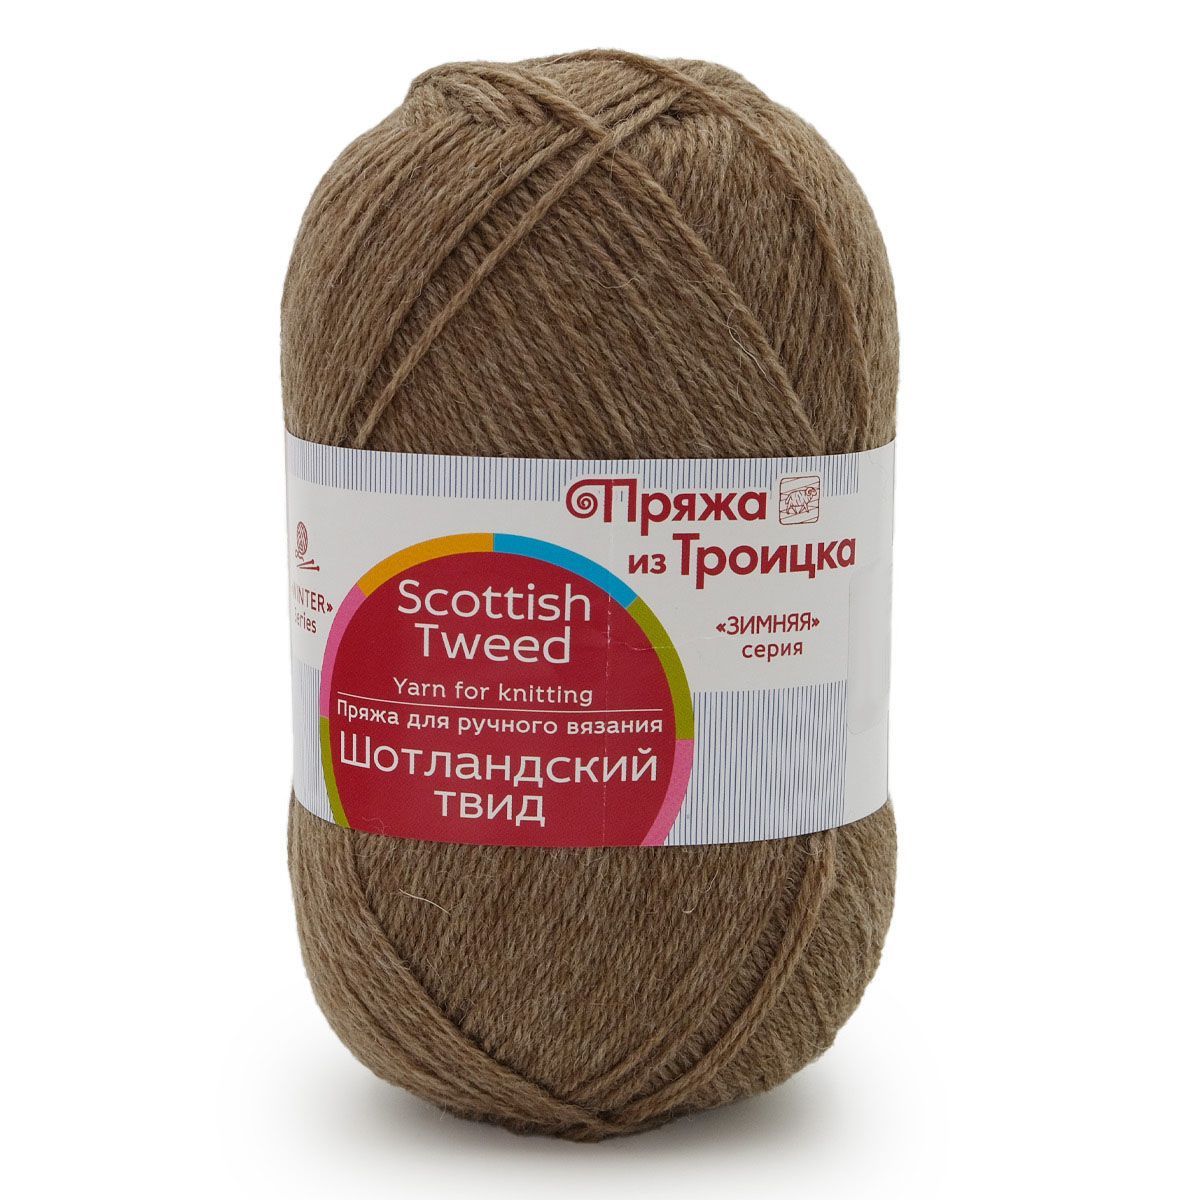 Пряжа для вязания из Троицка Шотландский твид 100г (1019 серобежевый меланж), 10 мотков